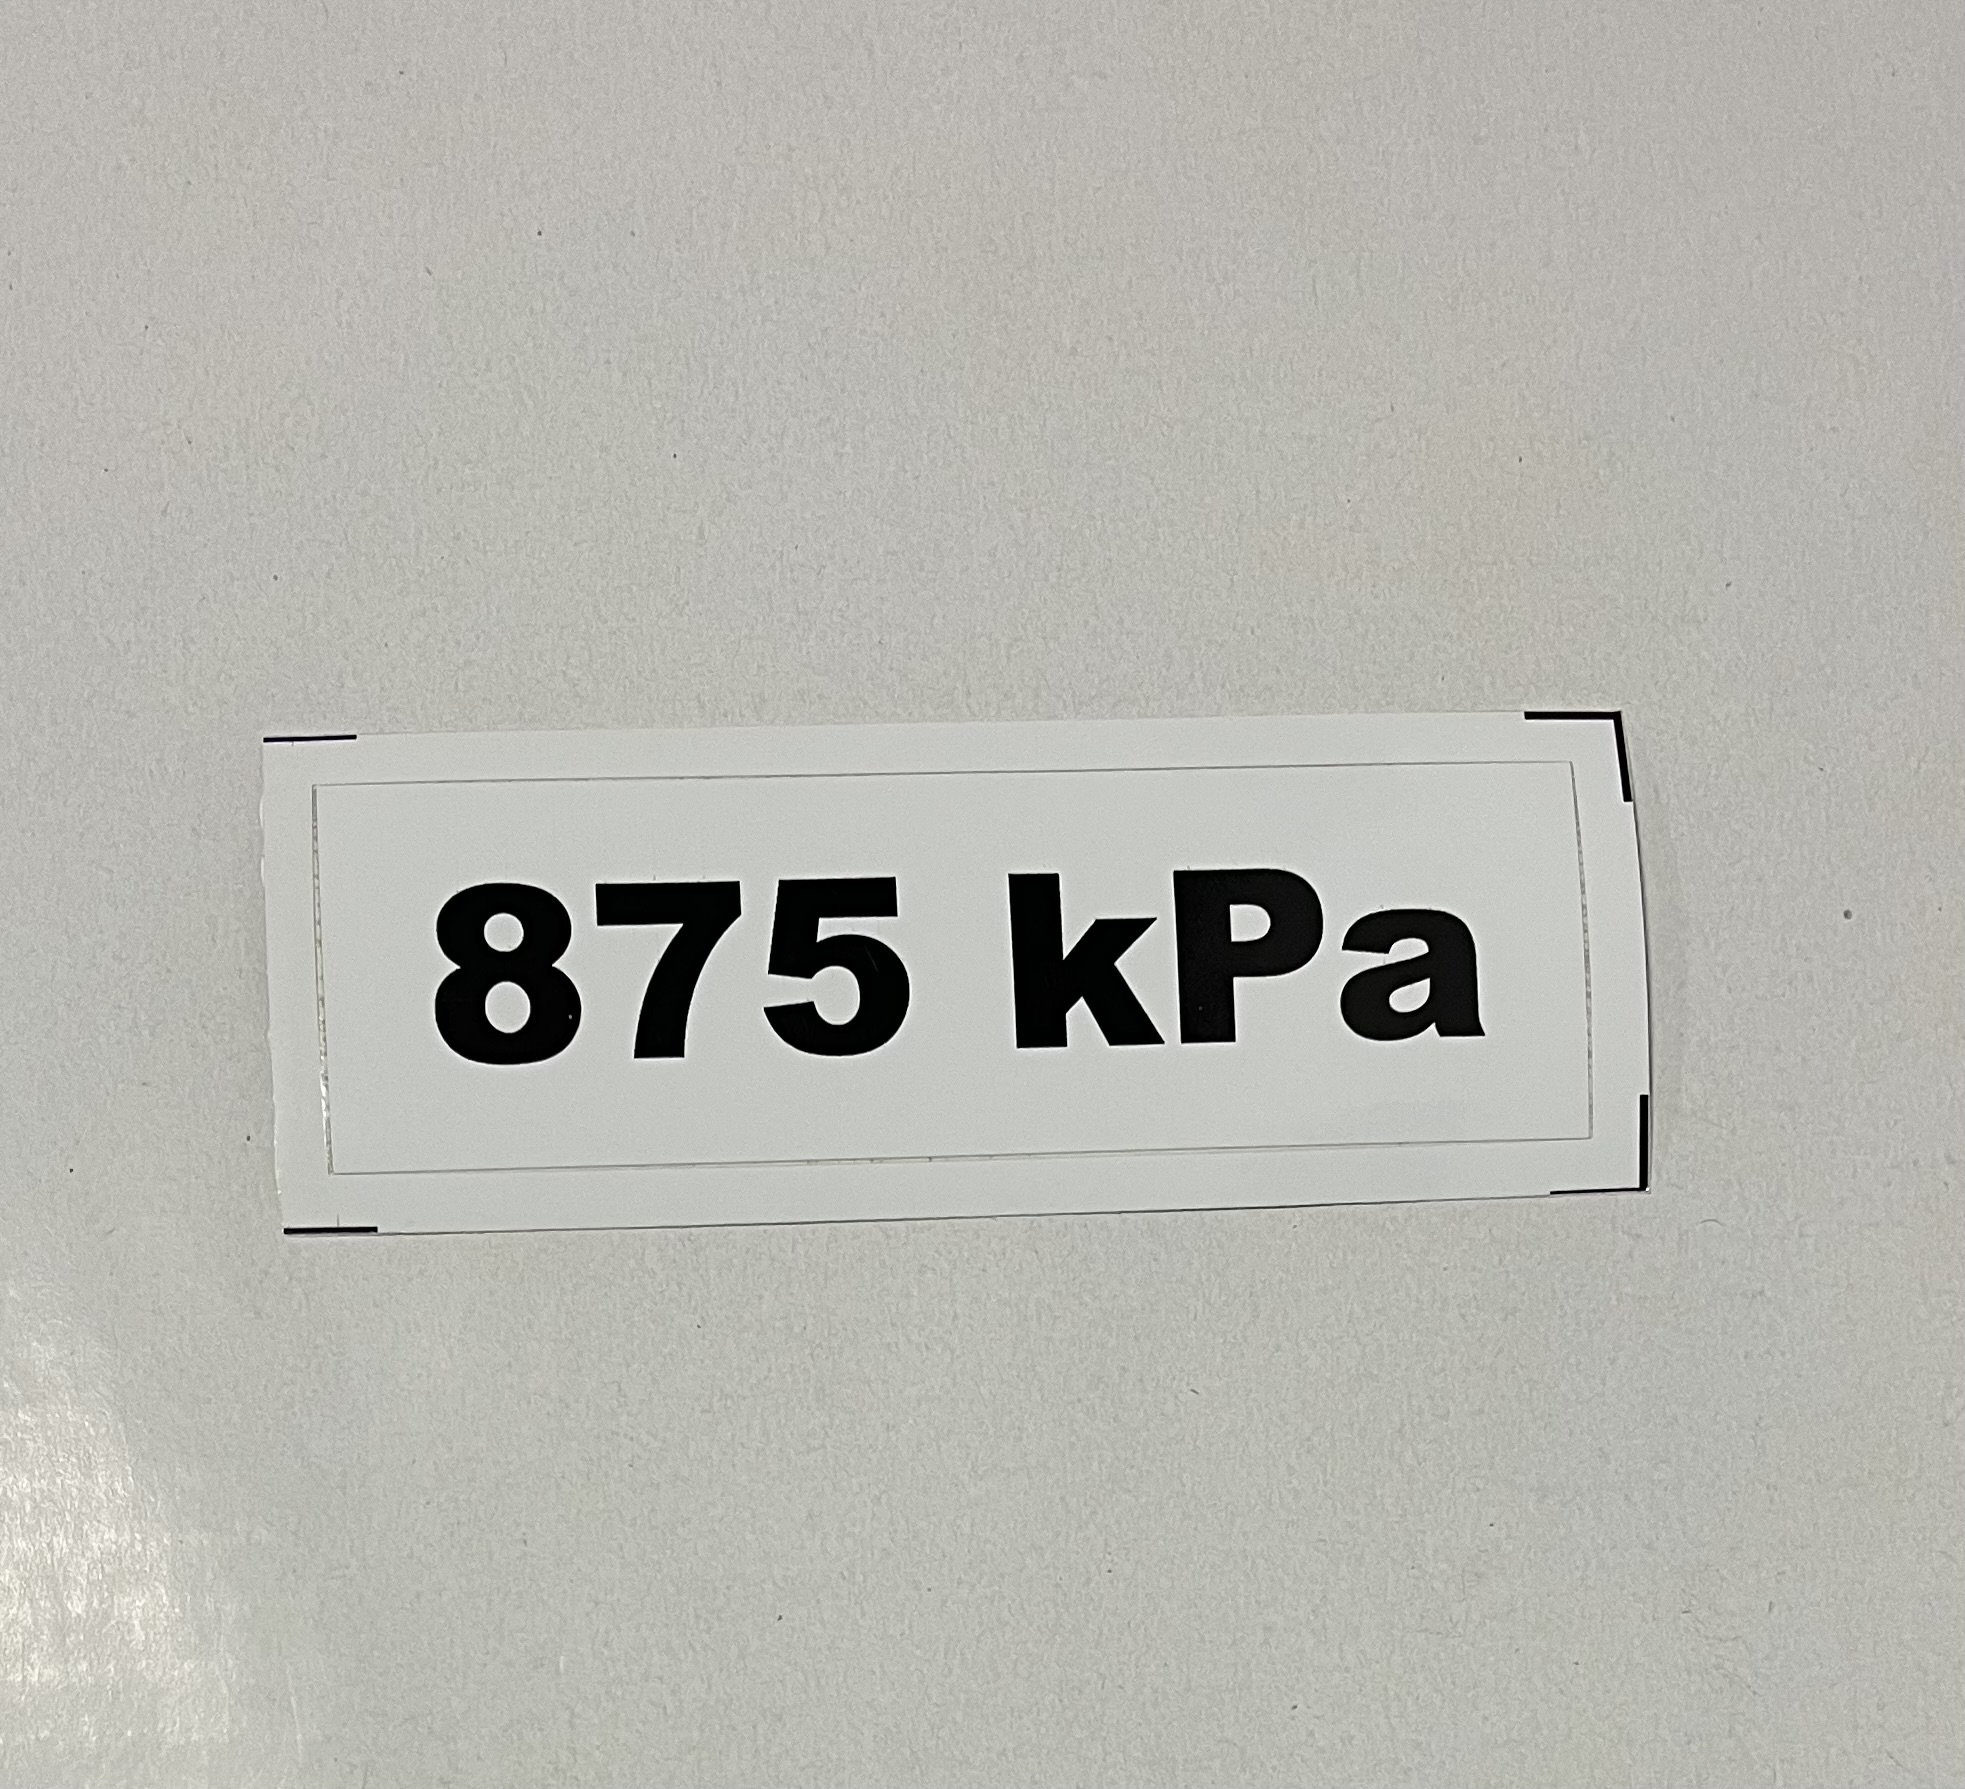 Označenie kPa 875